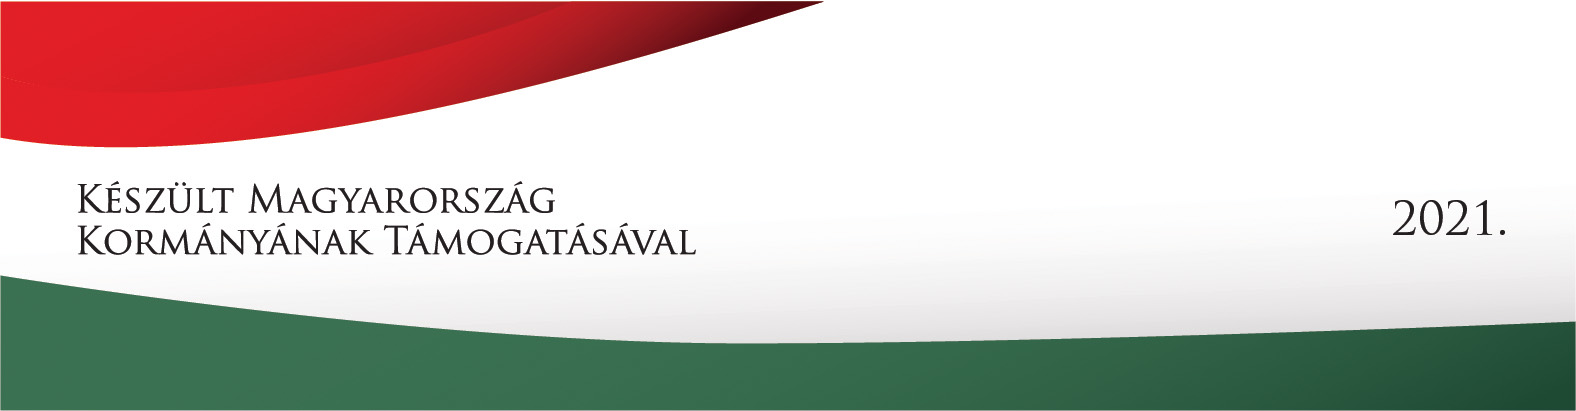 Magyarország kormányának támogatásával 2021